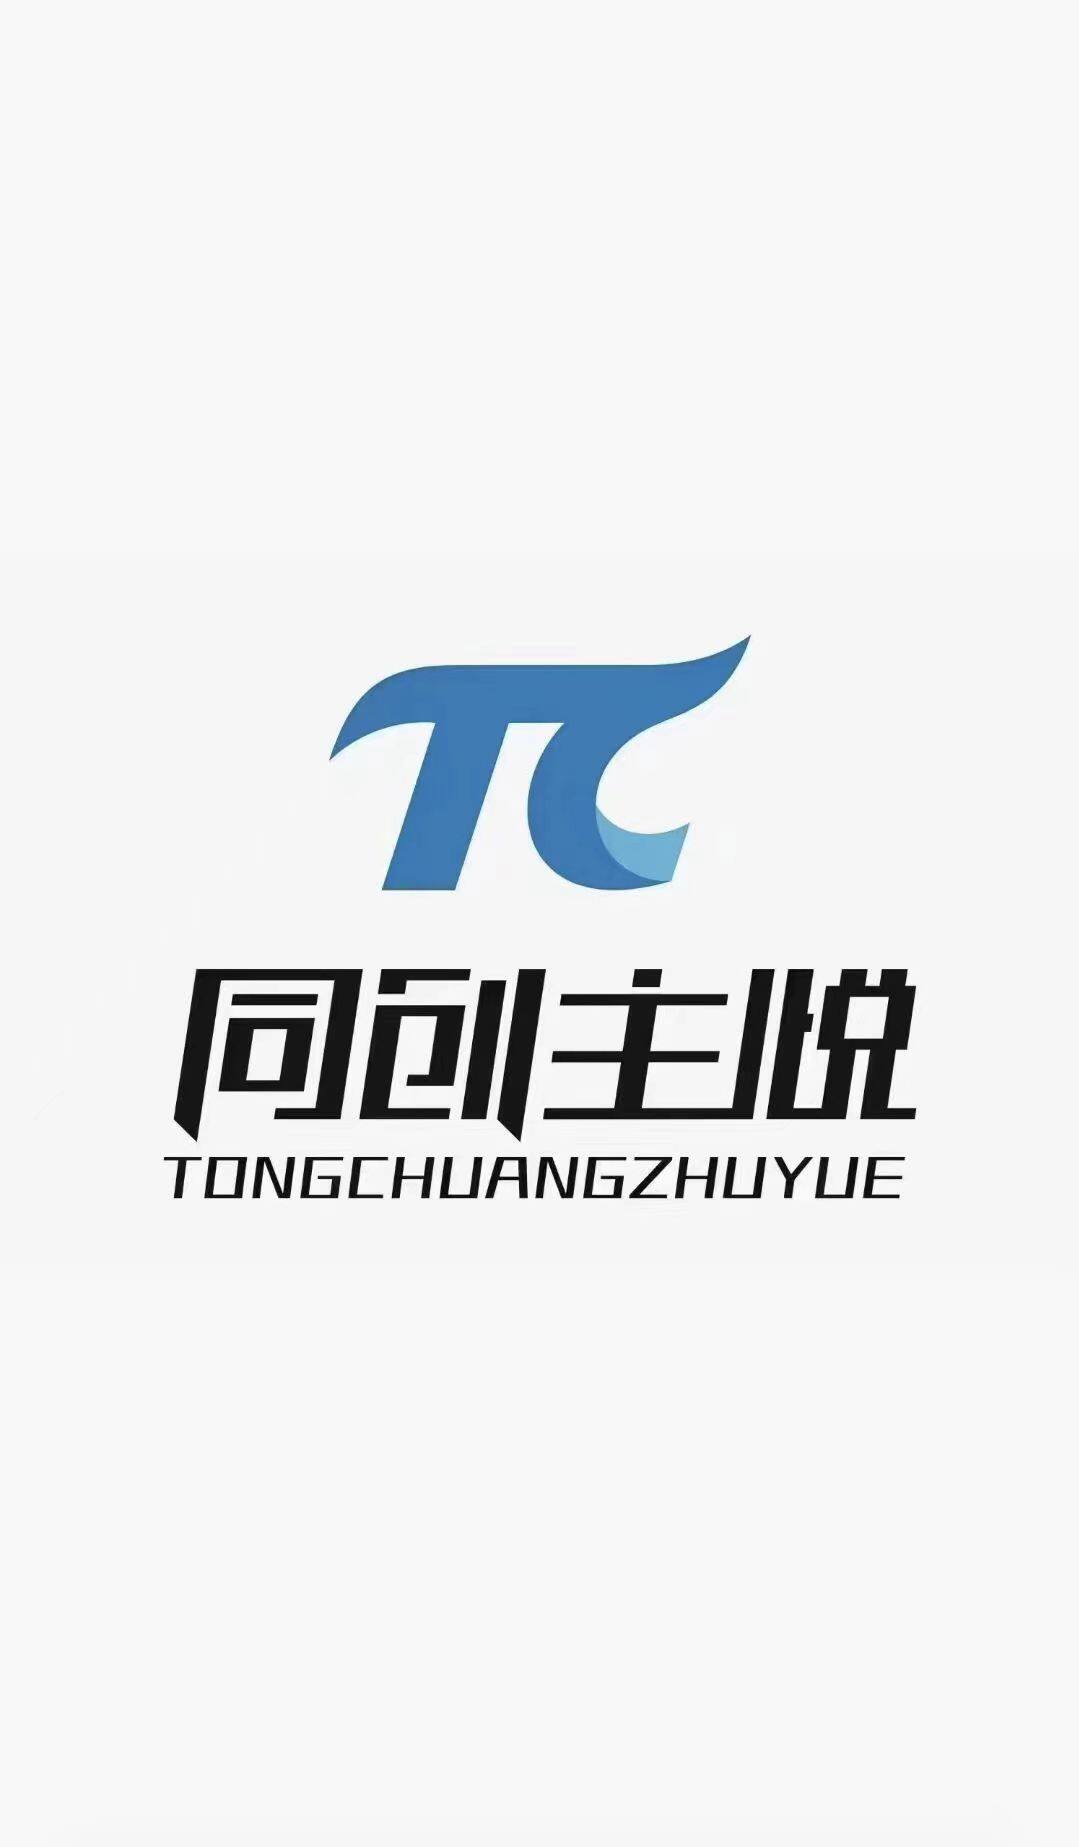 成都域帝徕科技有限公司logo